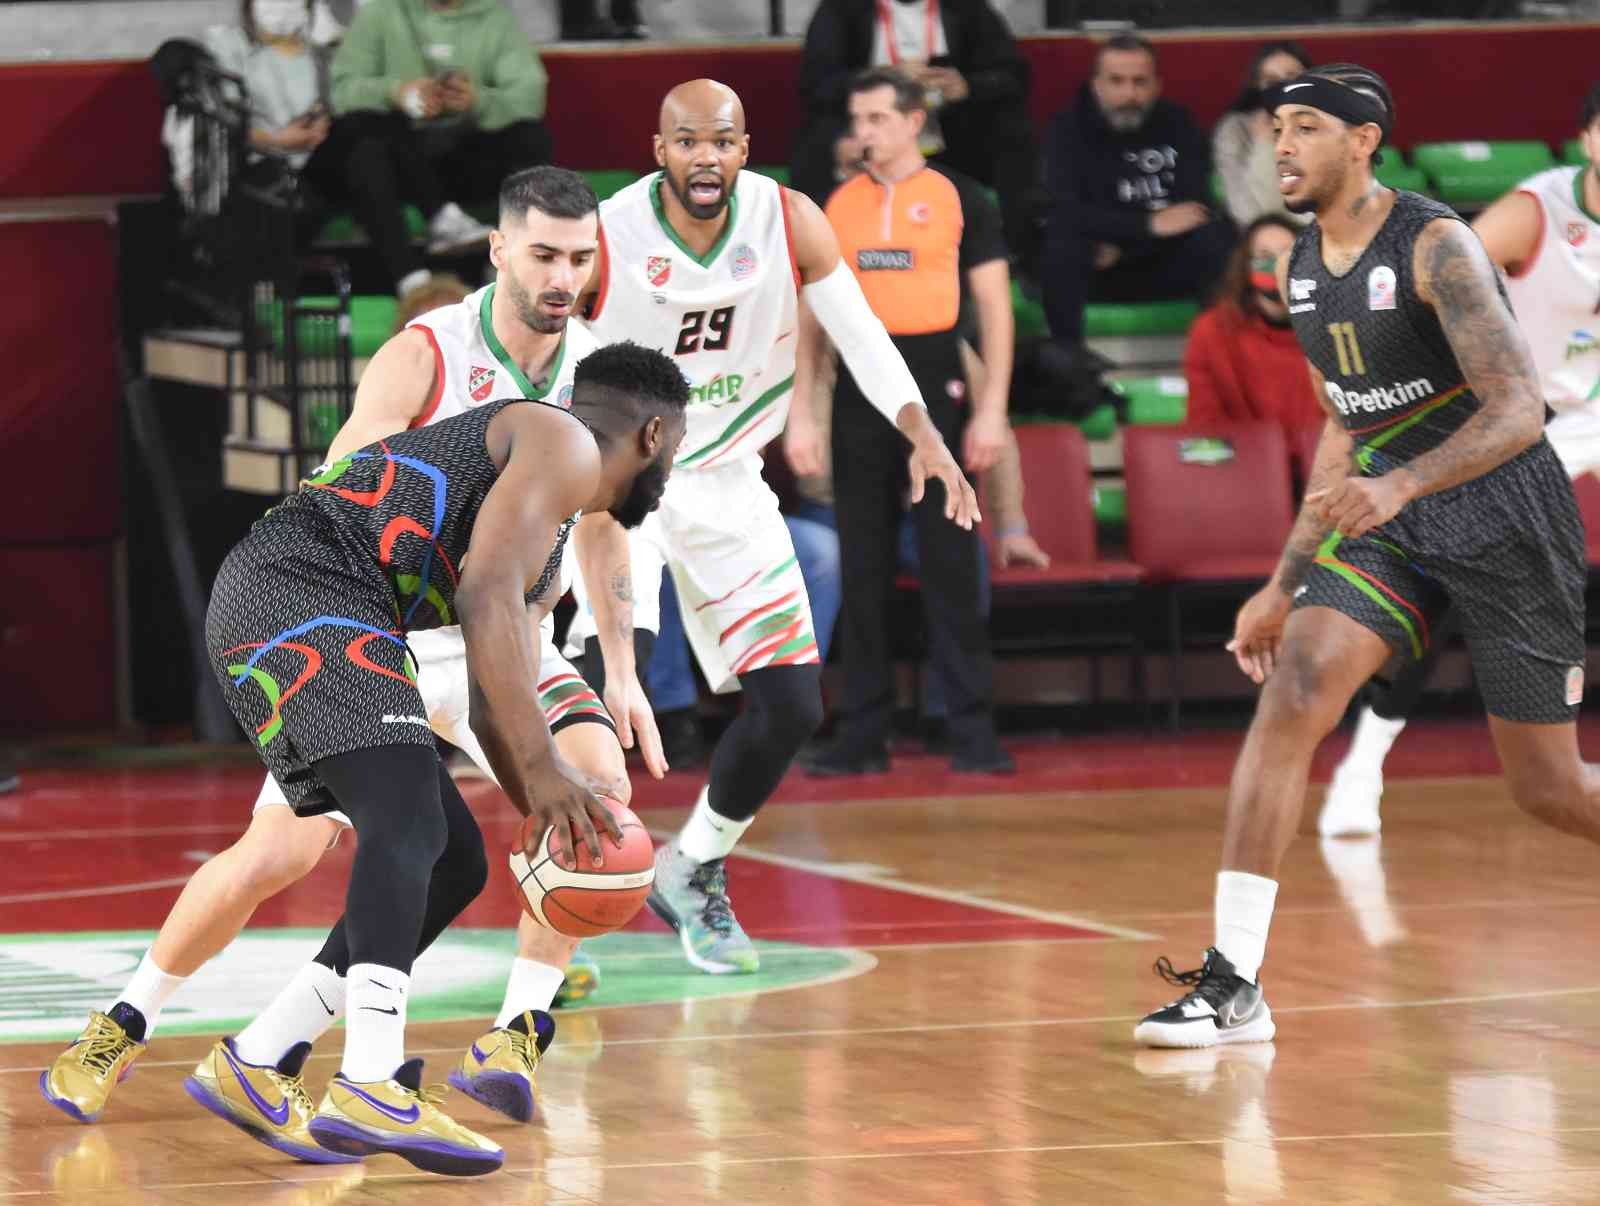 ING Basketbol Süper Ligi: Pınar Karşıyaka: 91 - Aliağa Petkimspor: 79 #izmir